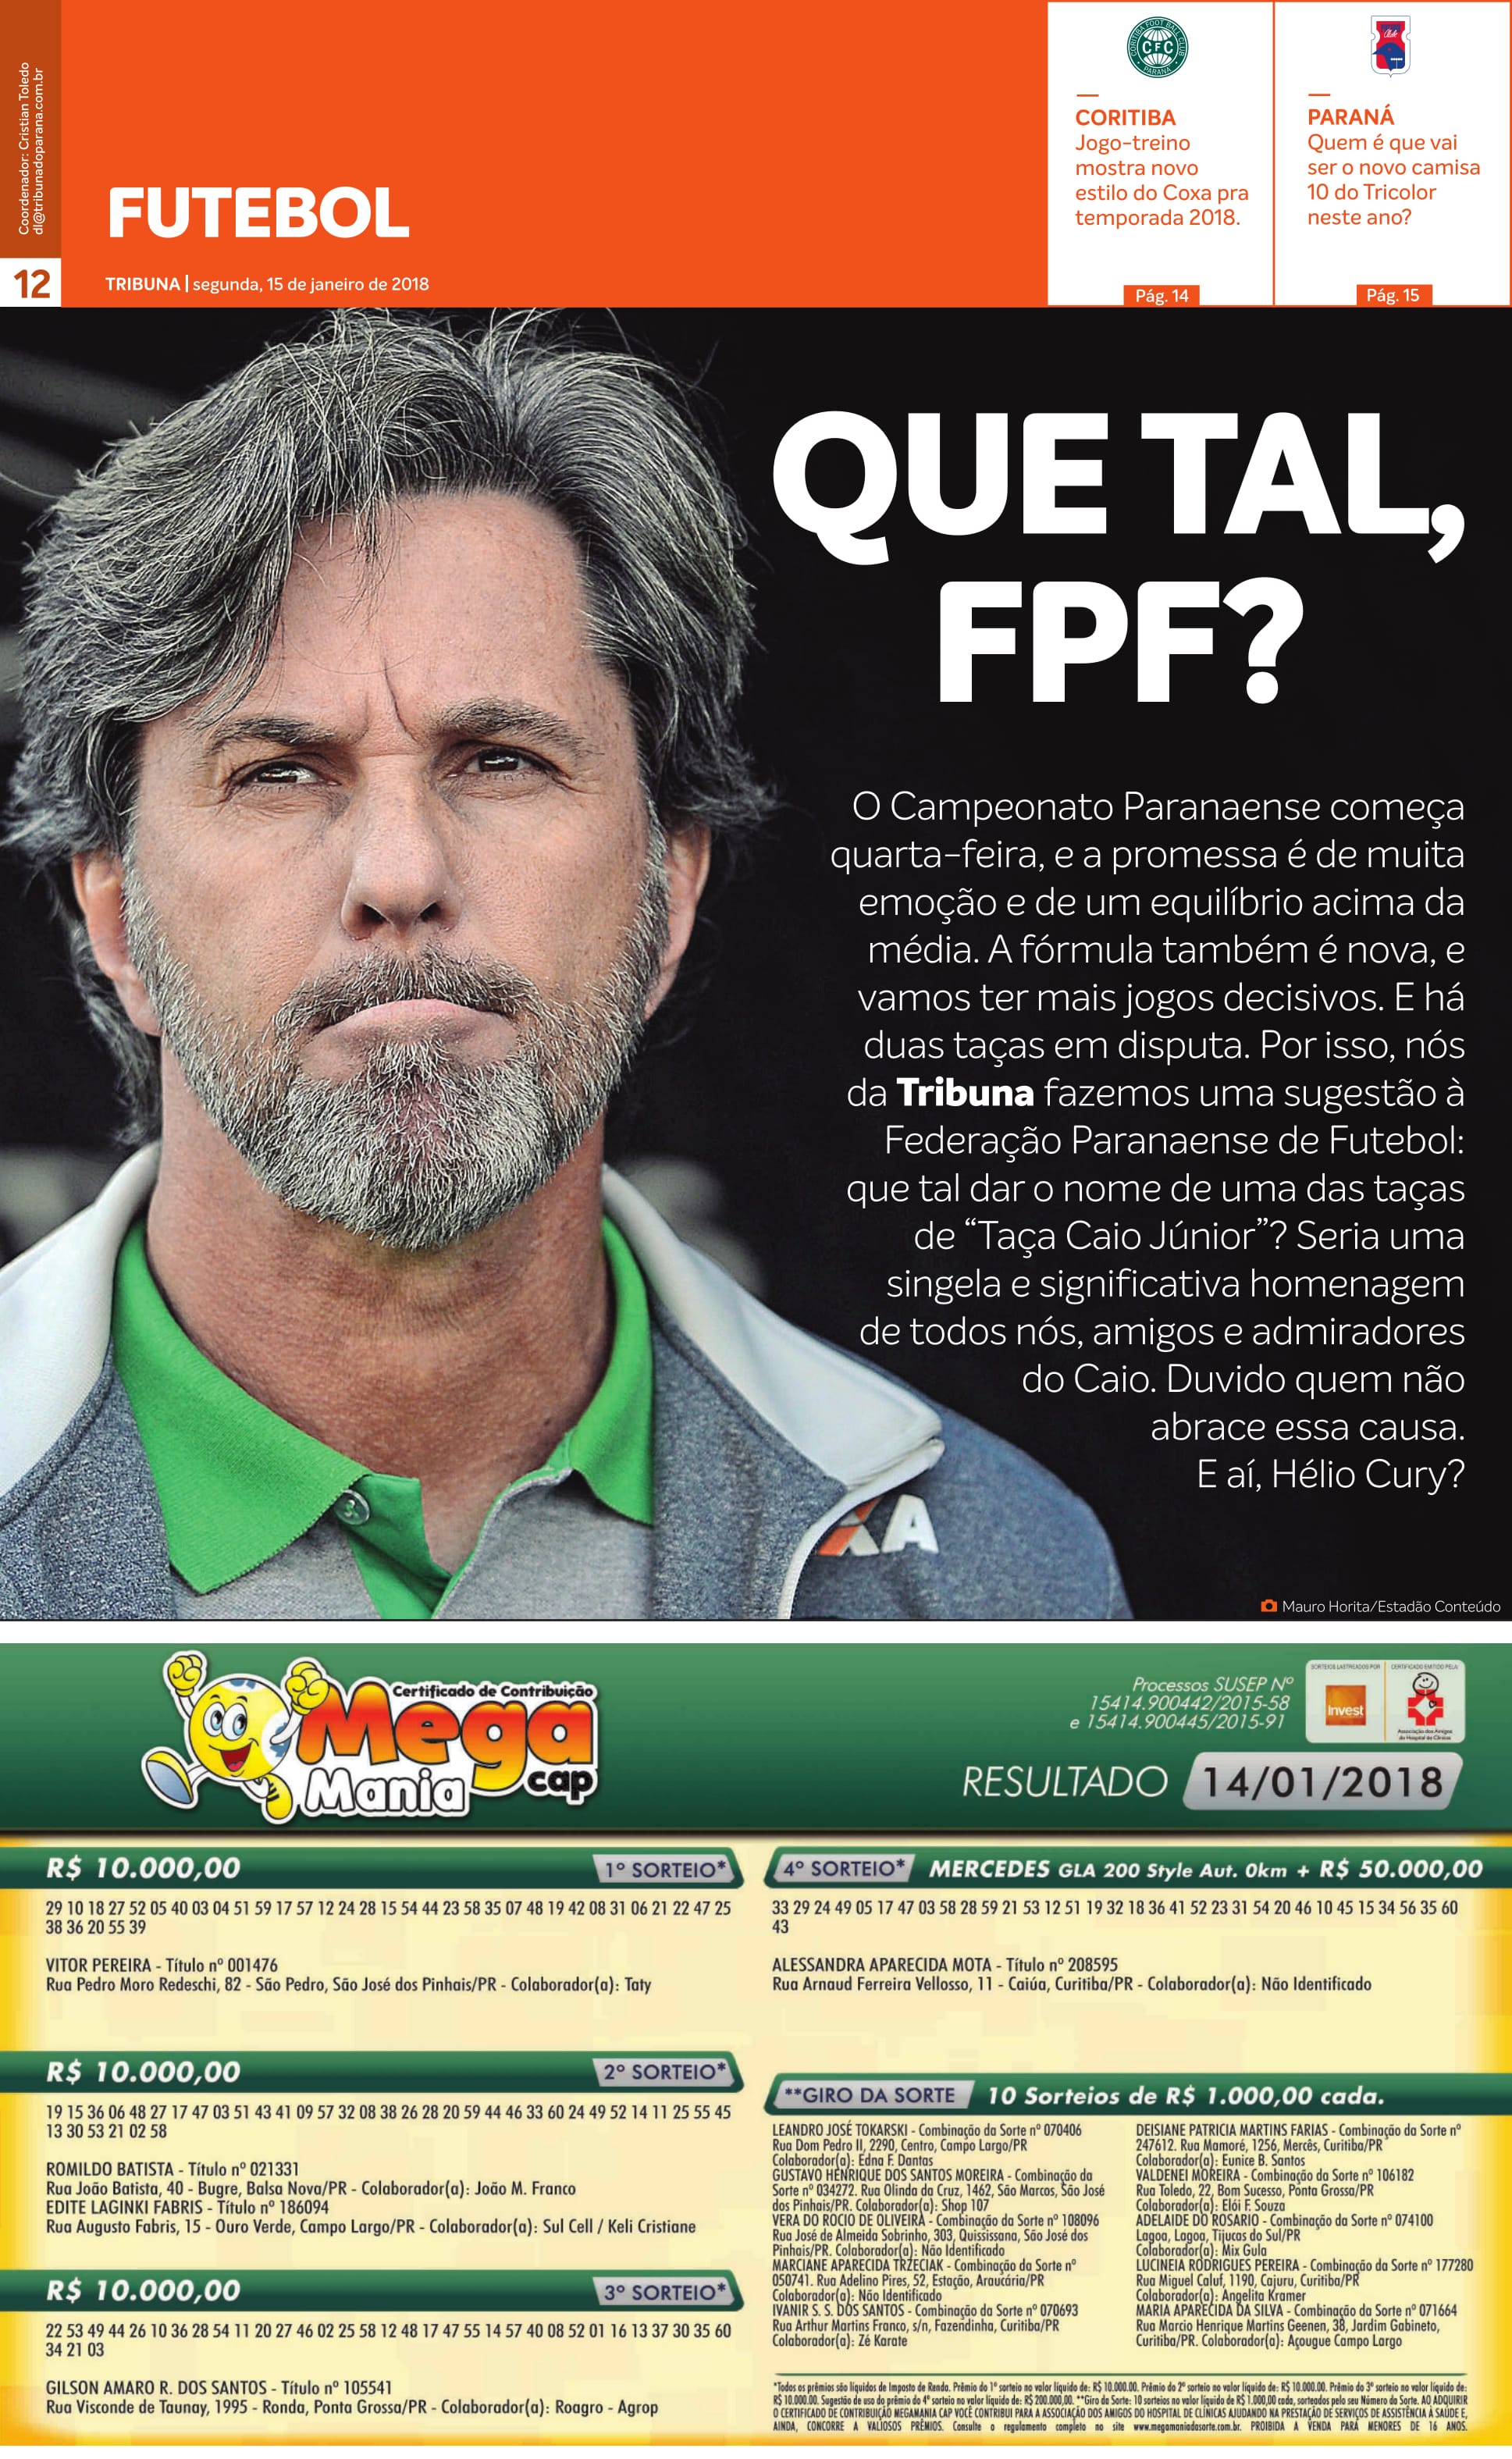 Capa do Esporte da edição de segunda-feira (15) da Tribuna.